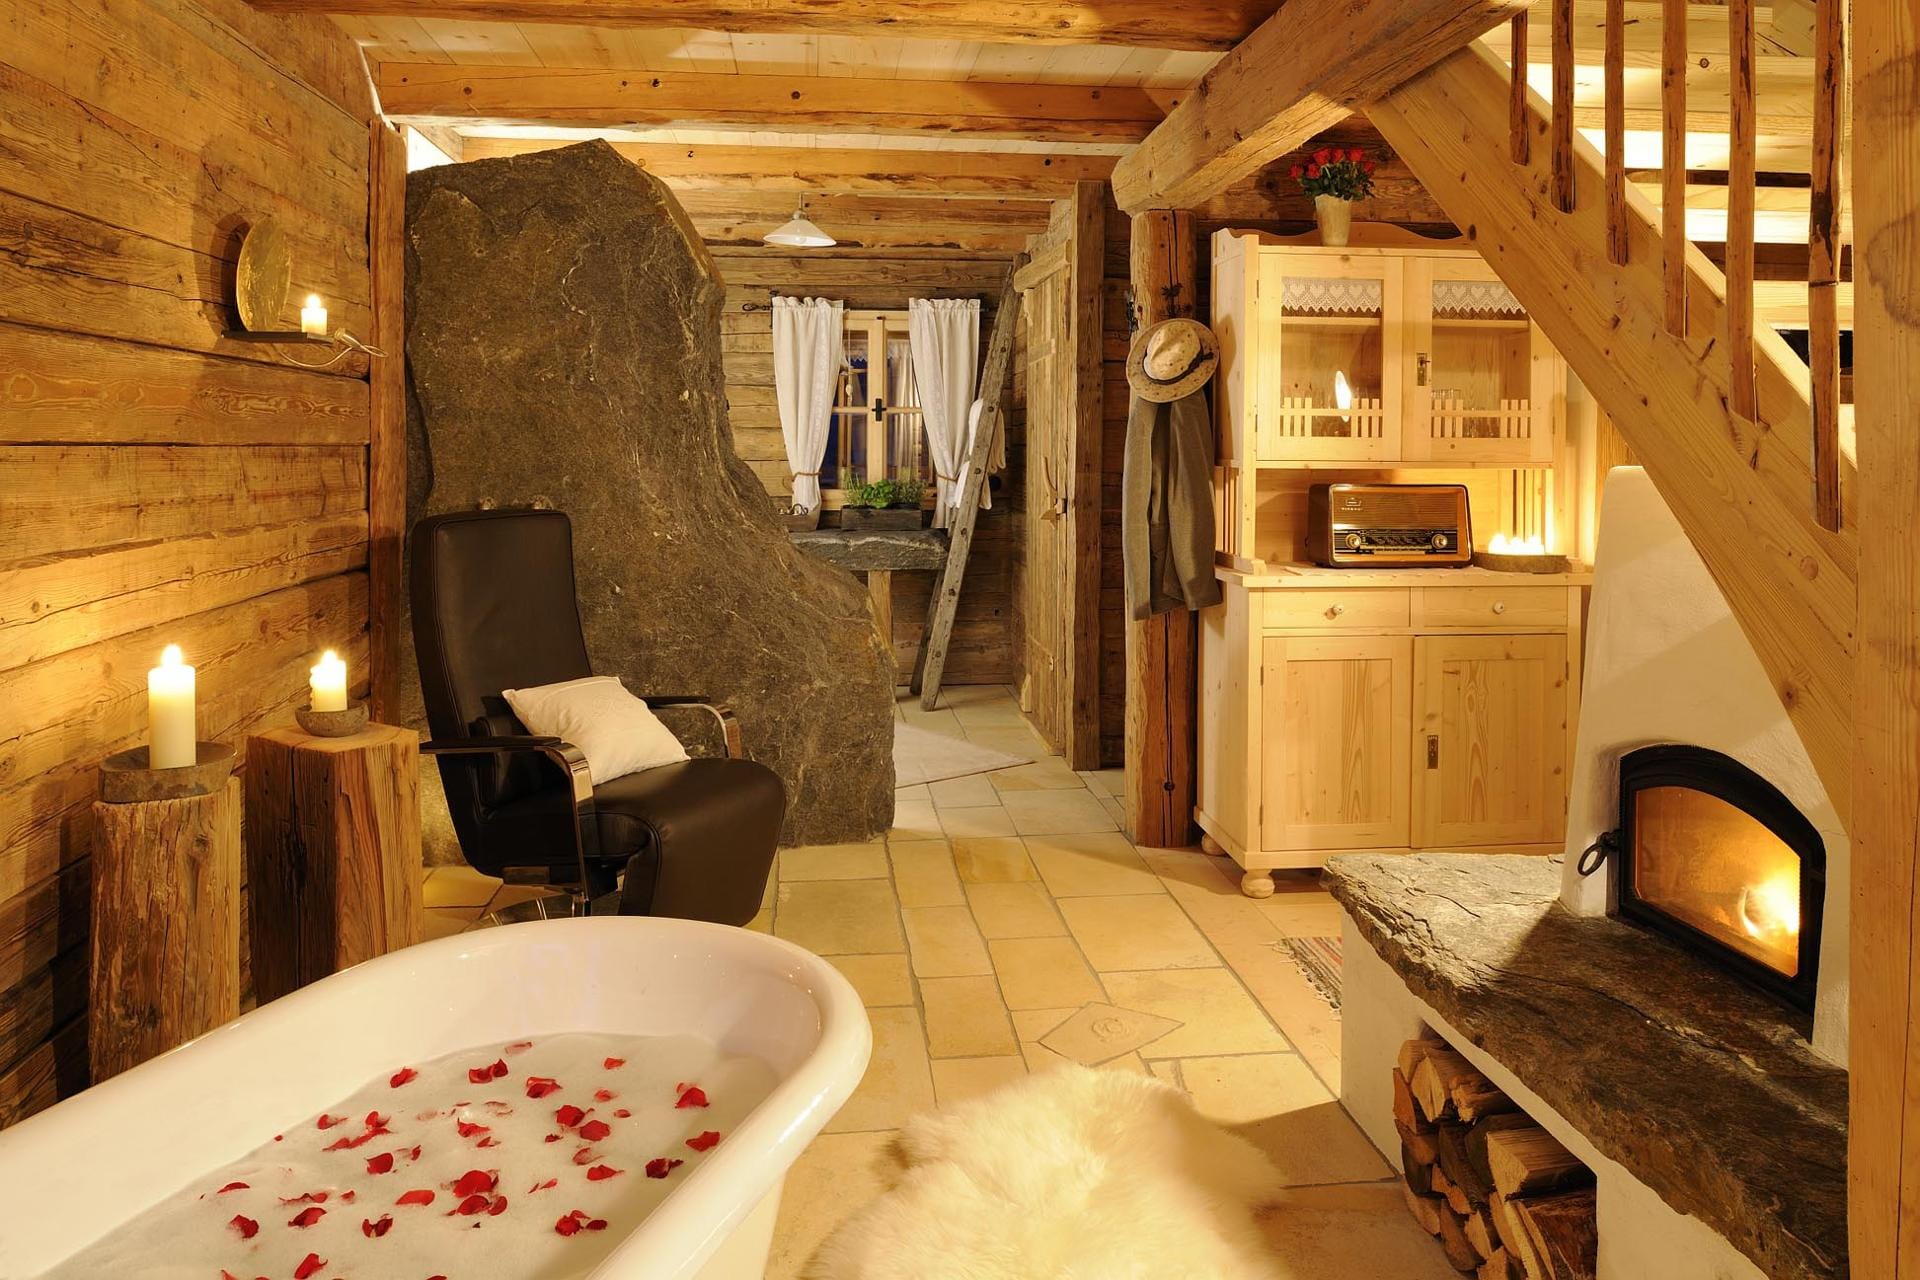 Ein romantischer Höhepunkt der Hütten im Bergdorf sind die freistehenden Badewannen in der Stube.